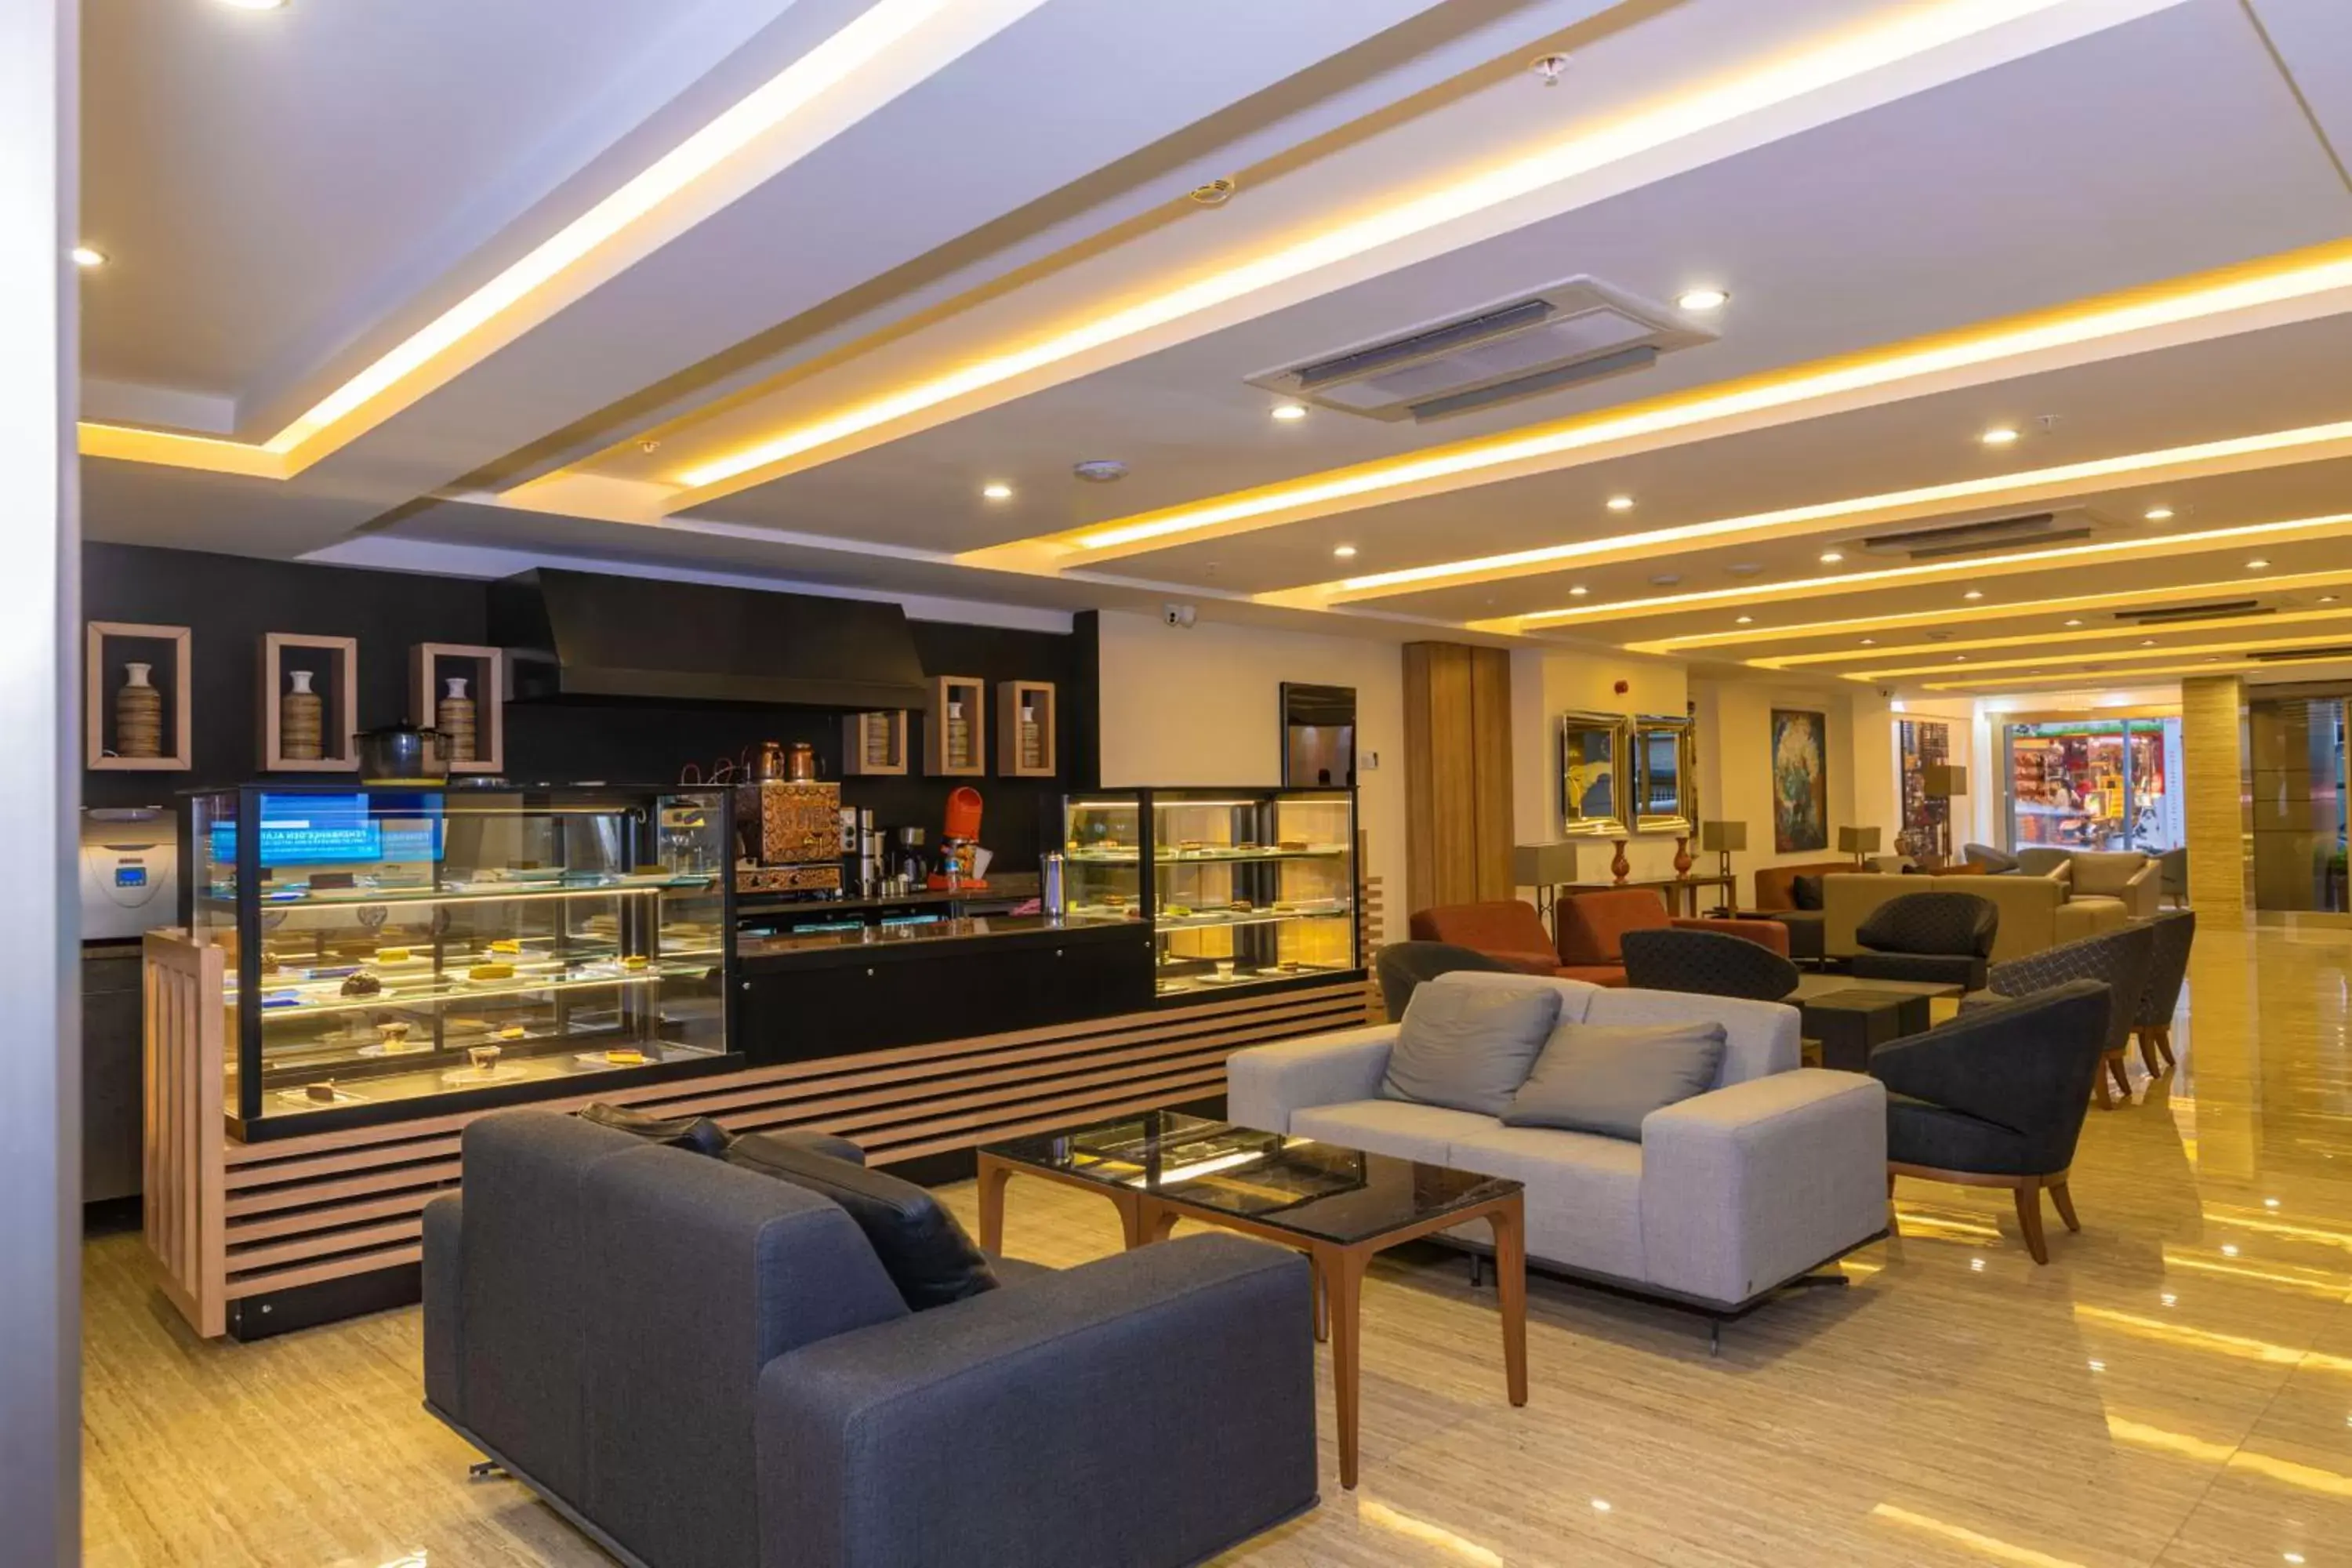 Lobby or reception, Lobby/Reception in 38 Hotel